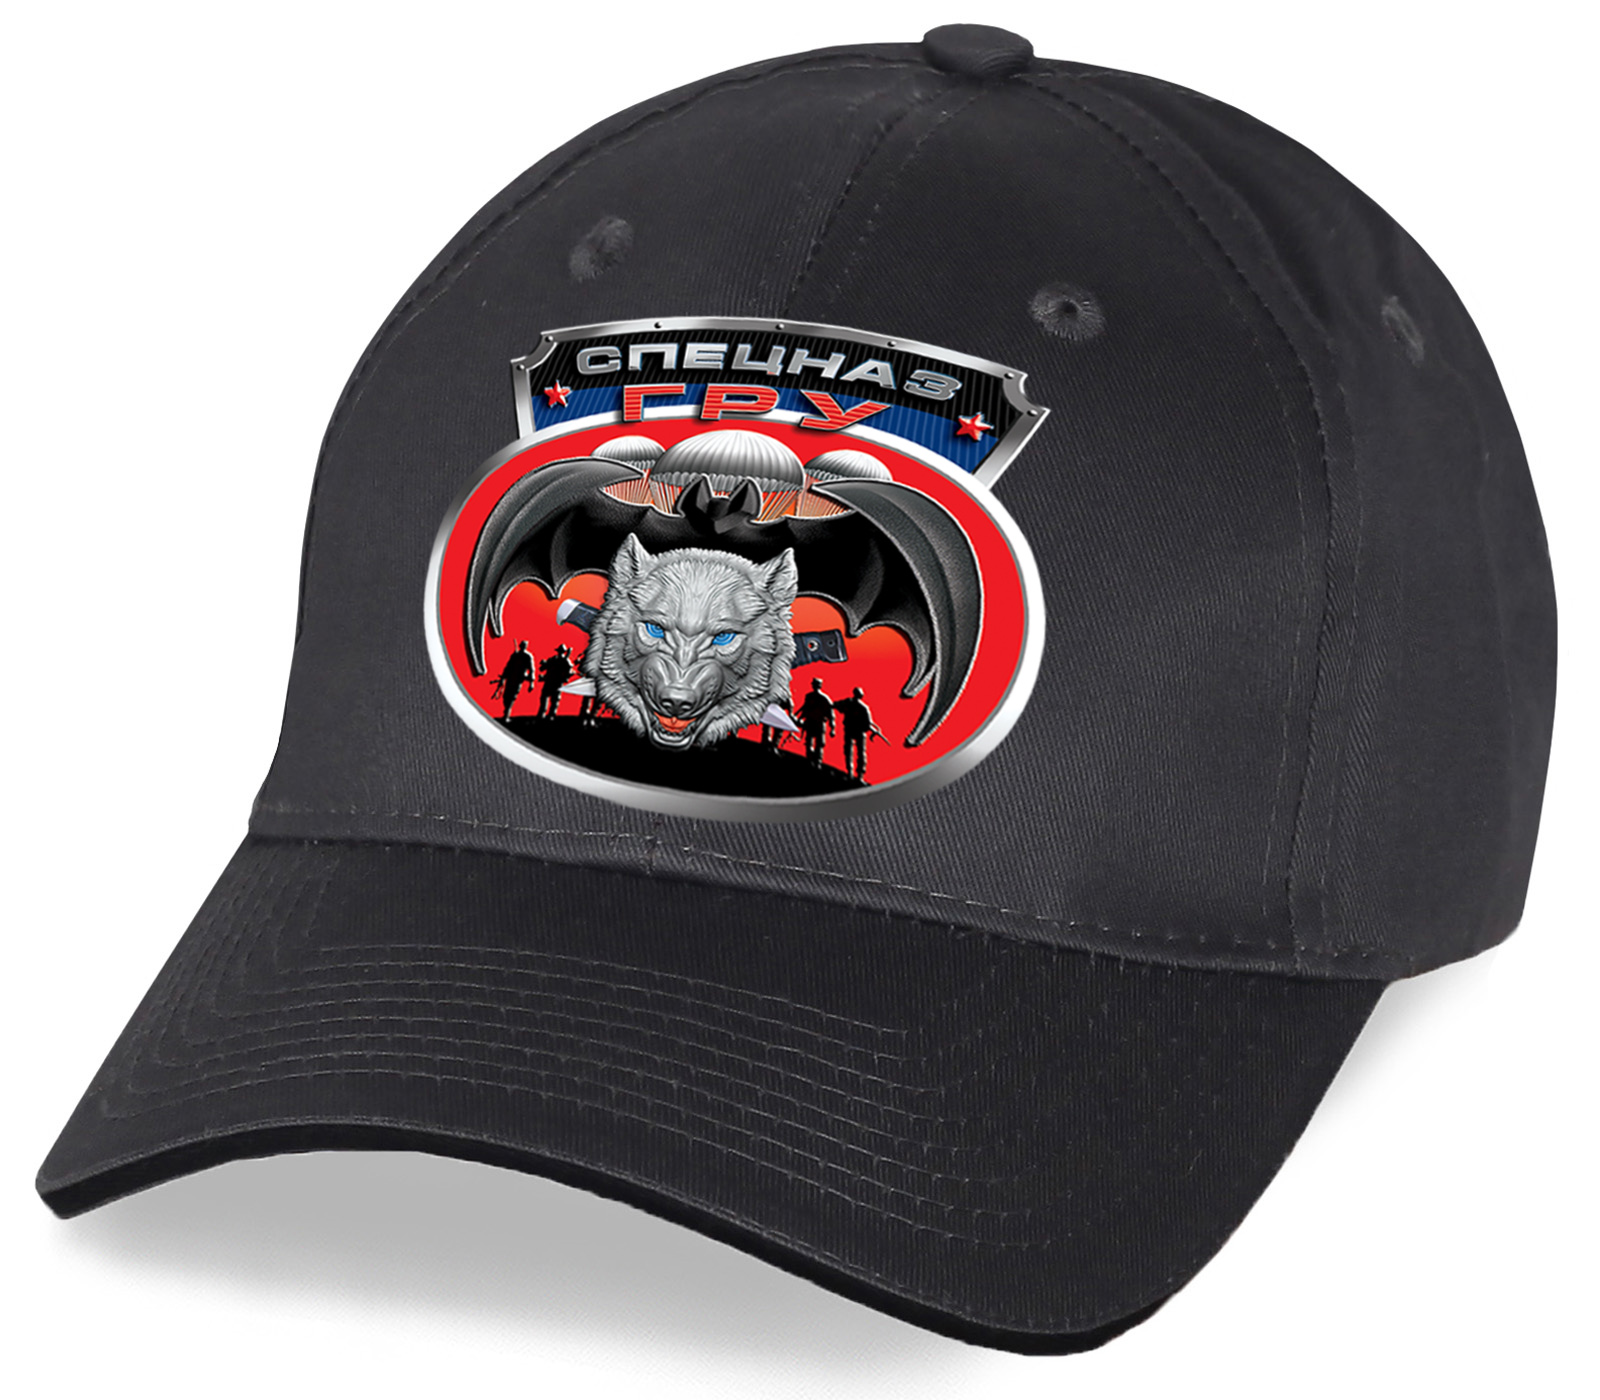 Заказать незаменимую черно-серую кепку с символом спецназа ГРУ-волком от дизайнеров Военпро по низкой цене